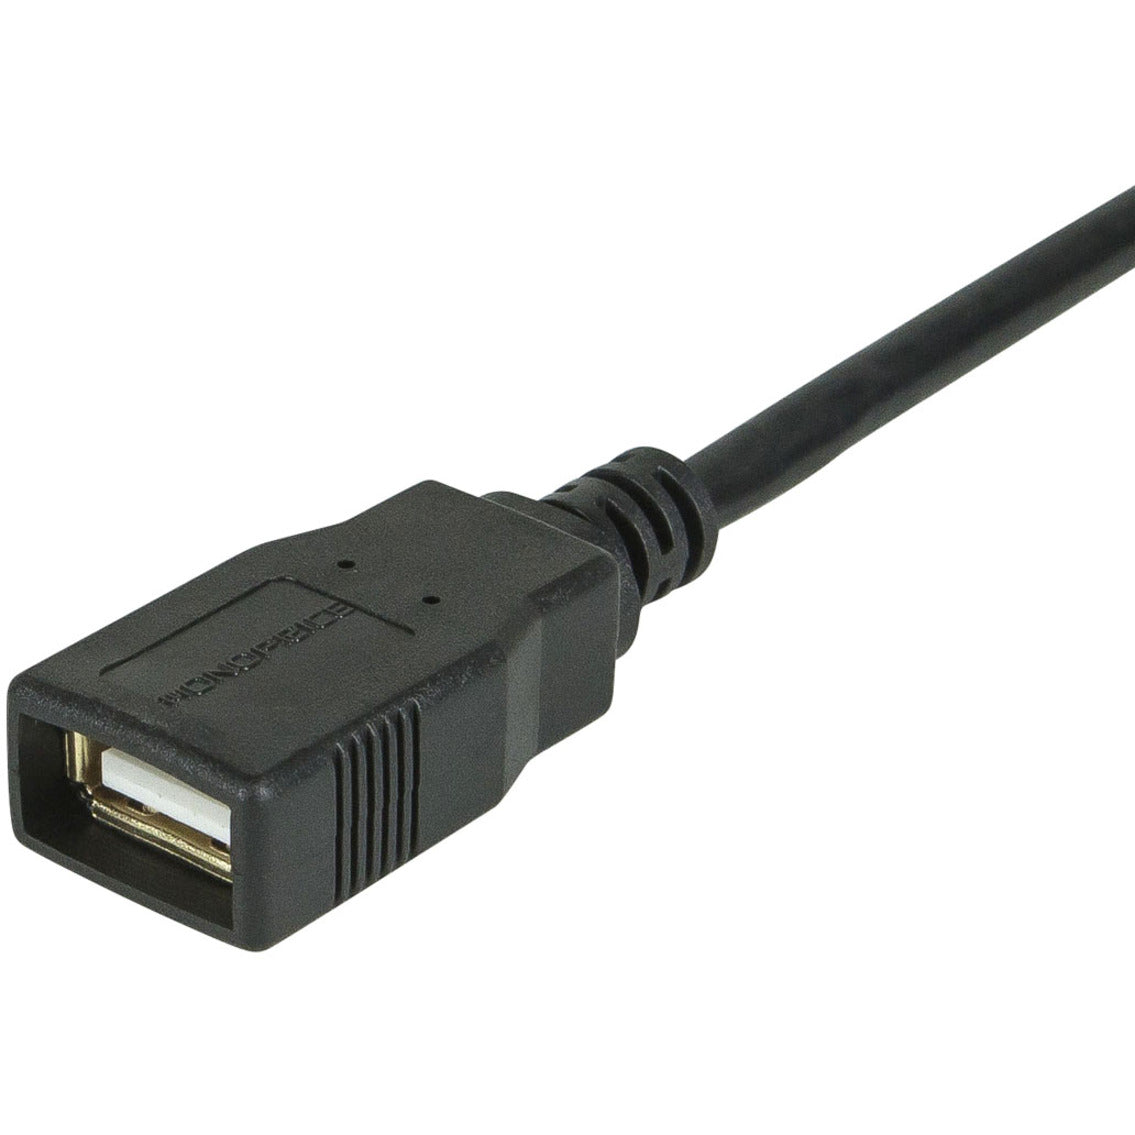 Monoprice 5433 6ft USB 2.0 A Macho a Hembra Cable de Extensión Libre de Corrosión Chapado en Oro